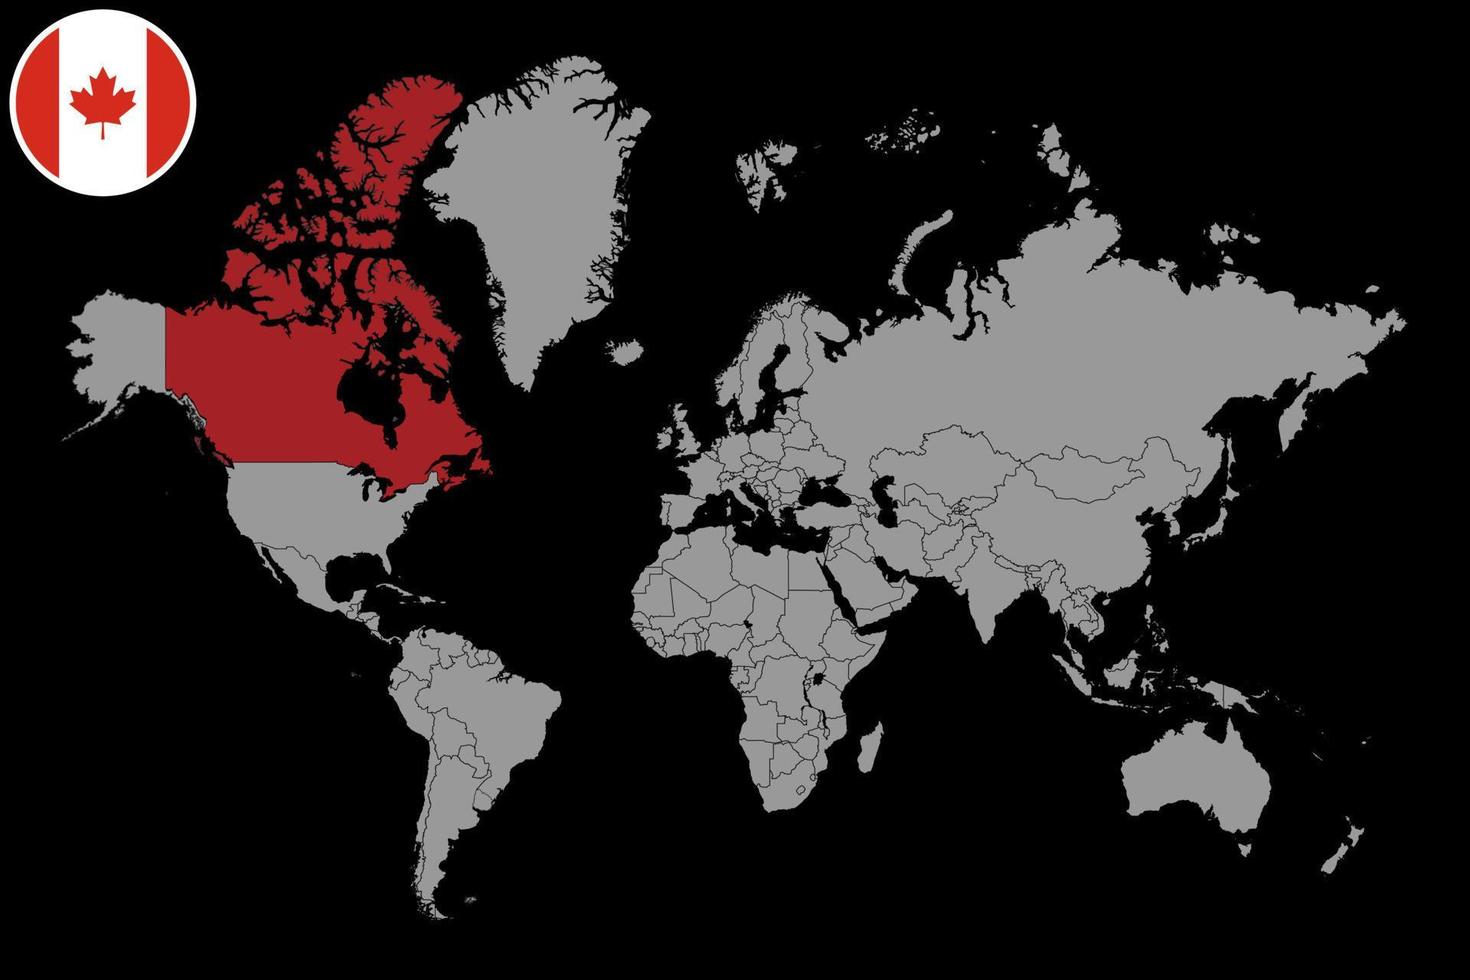 épingler la carte avec le drapeau du canada sur la carte du monde.illustration vectorielle. vecteur